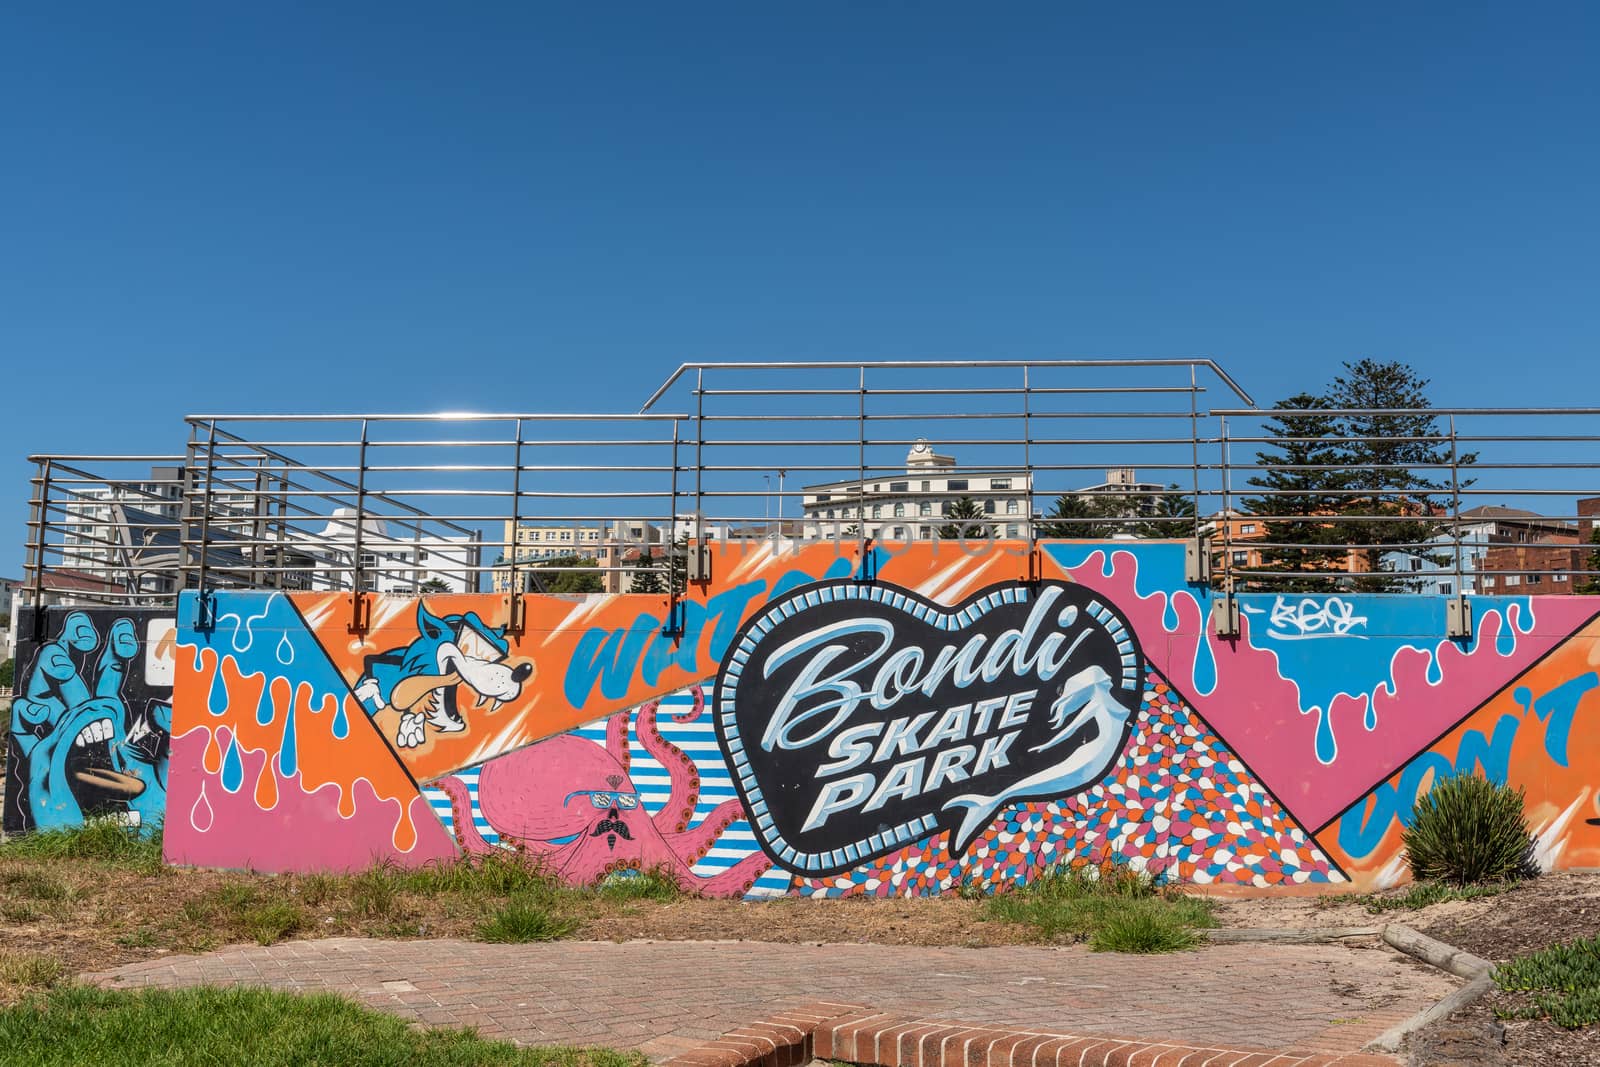 Bondi Skate Park at Bondi beach, Sydney Australia. by Claudine